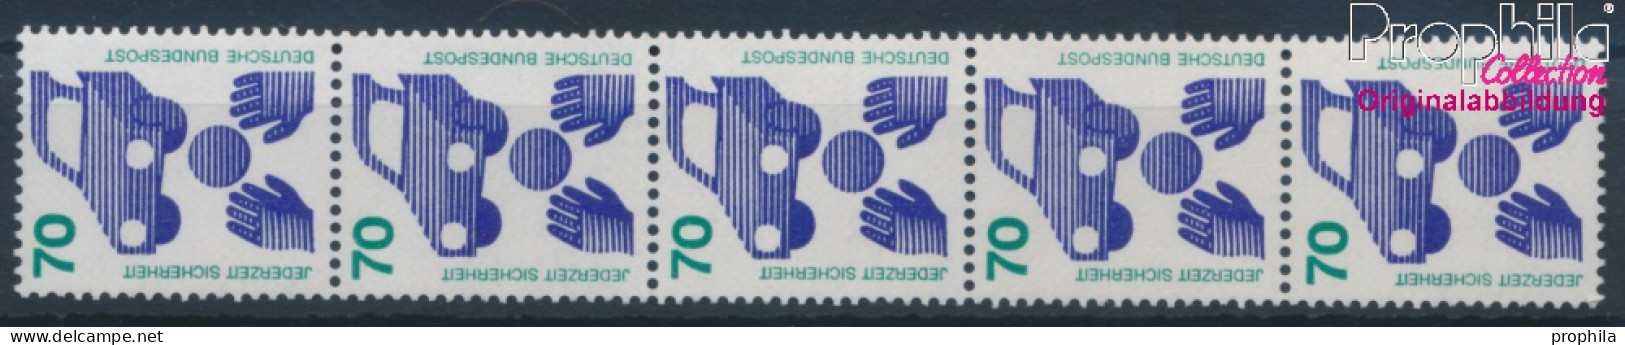 BRD 773Ra Fünferstreifen (kompl.Ausg.) Postfrisch 1973 Unfallverhütung (10343236 - Ungebraucht